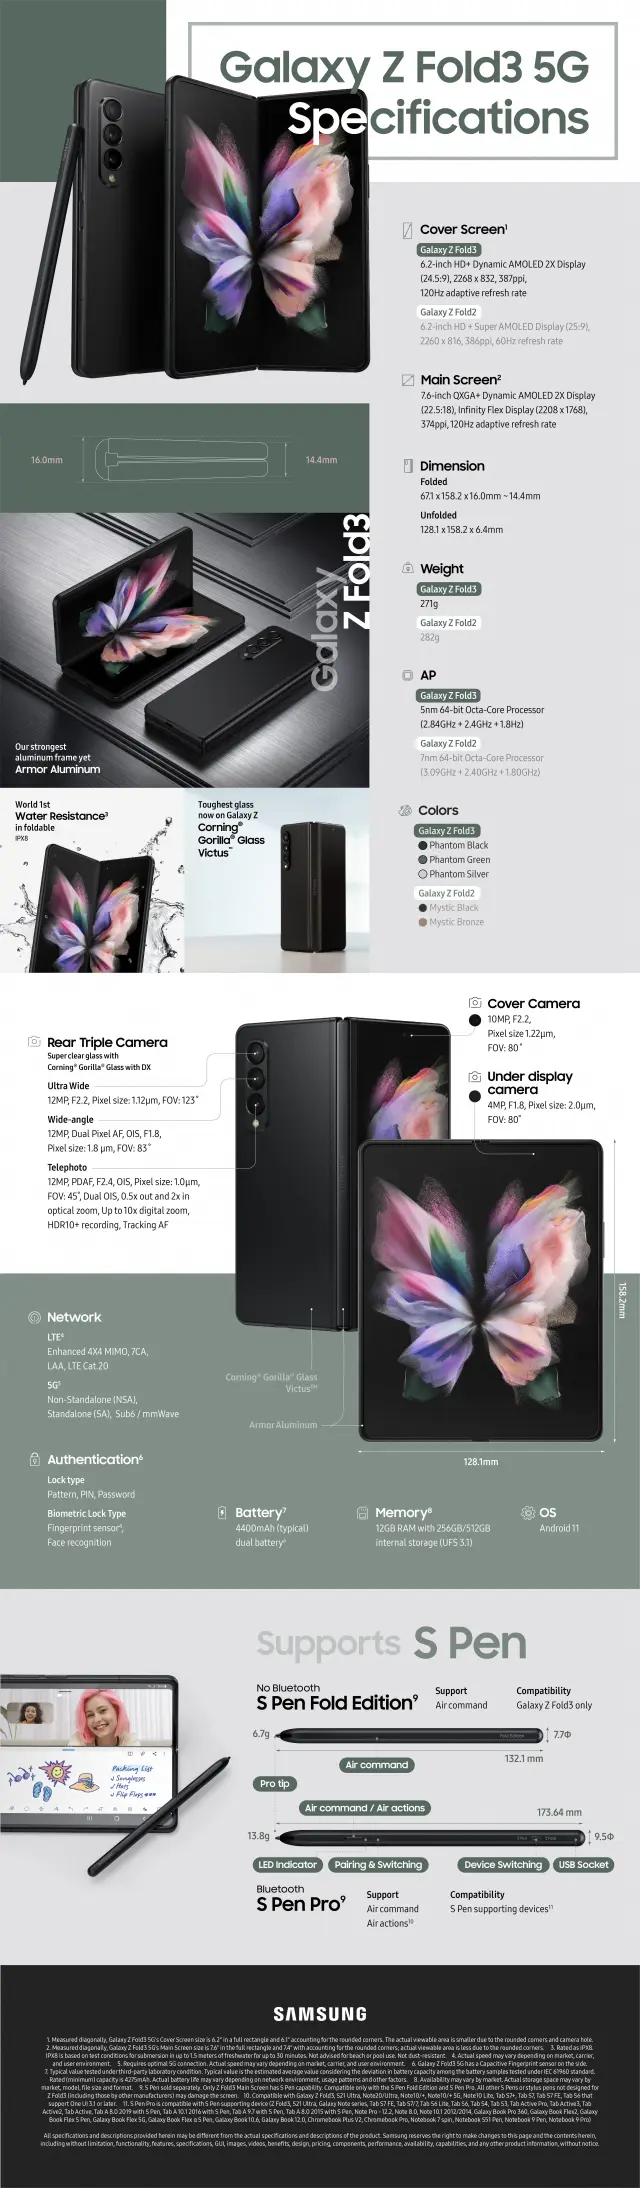 Principales características del Samsung fold 3